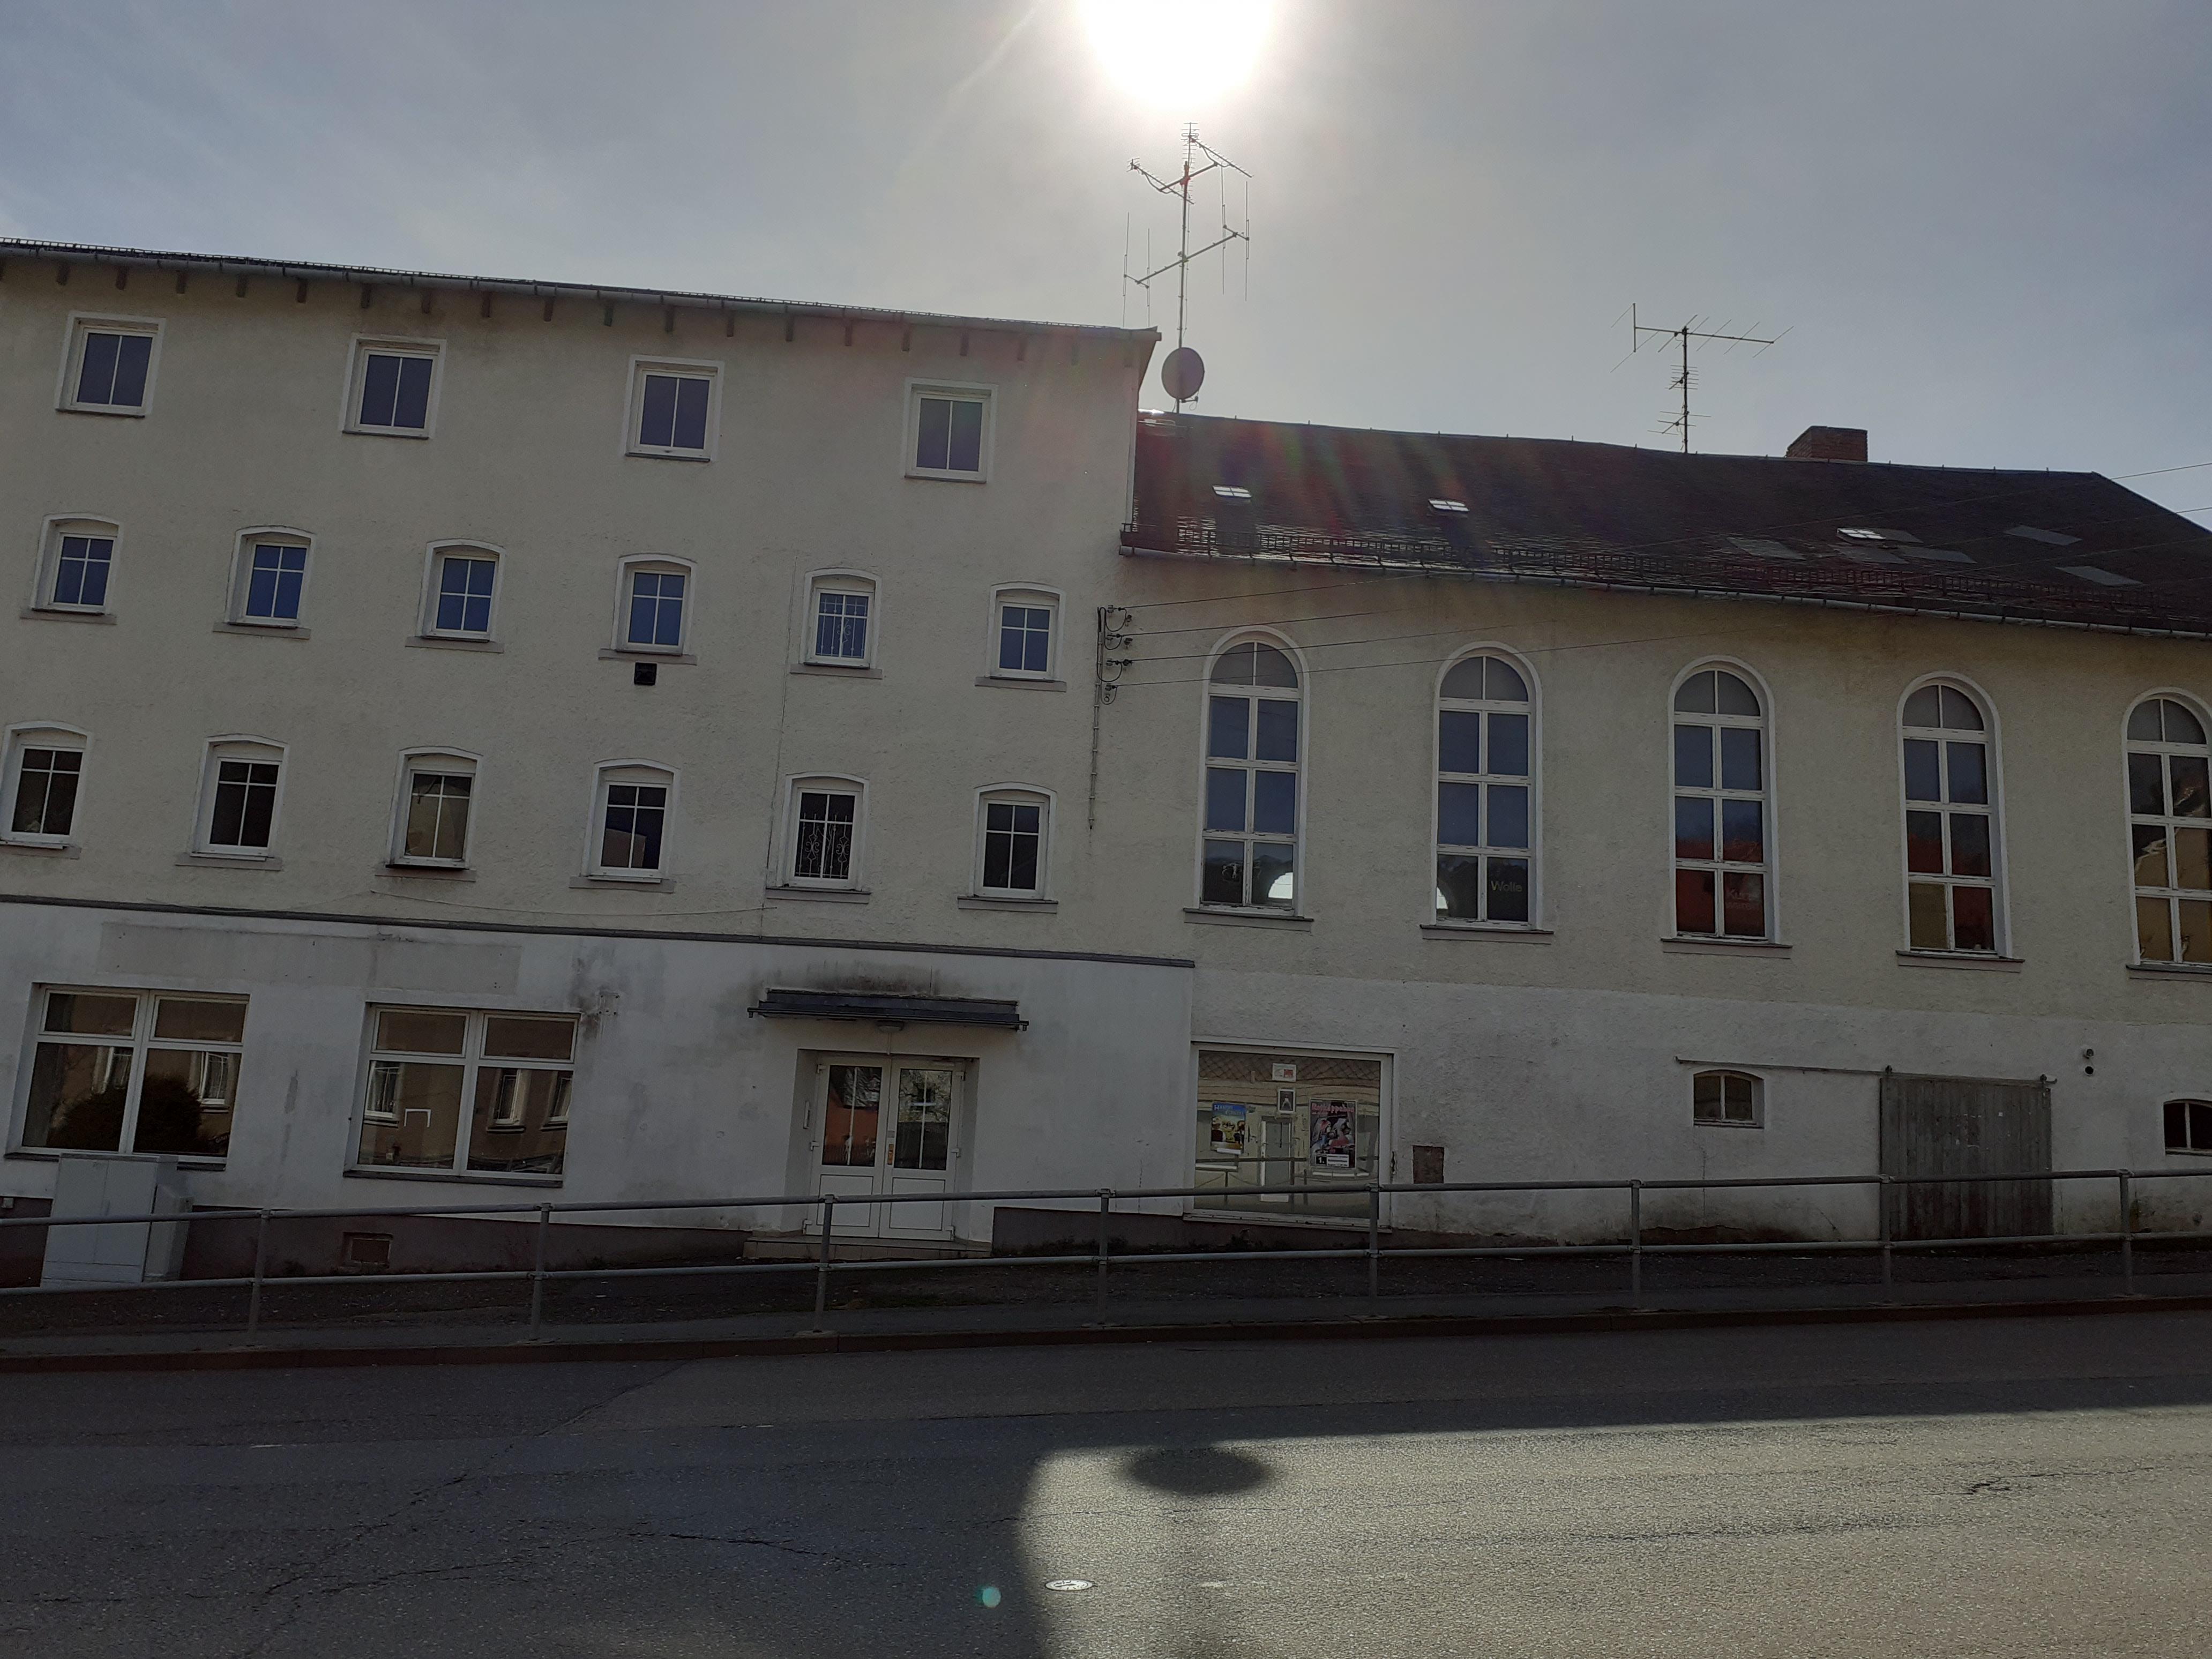 Wohn-und Geschäftshaus    Hohenstein-Ernstthal Hohensteiner Str. 3